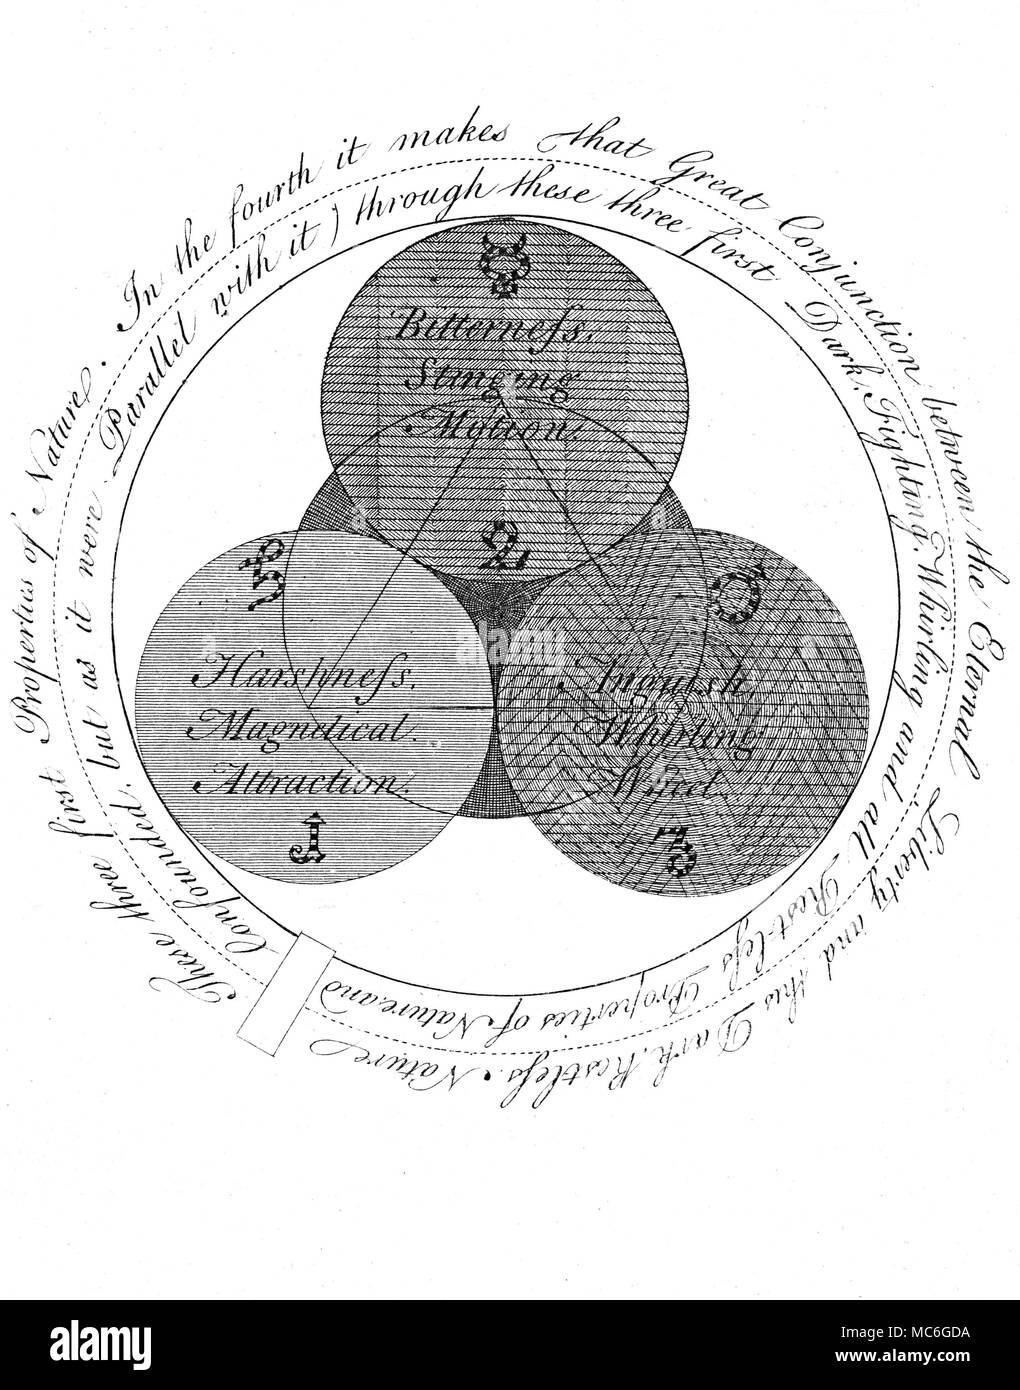 - Symboles de l'ART occulte - Rose-croix SPIRALES - l'un d'une série de gravures occultes influents par William Law, à l'explication des principes de la pensée d'arcane de la Rosicrucian, Jacob Boehme, dans les Œuvres de Jacob Behmen, l'Ordre Teutonique, Theosopher Vol 1, 1764. Planche 2 - qui est une continuation du texte littéral plaque 1, et qui développe les trois principes ou Propriétés (le sel, le soufre et le mercure de la tradition alchimique) qui émergent de l'acte de création (la manifestation, pour ainsi dire, de la Trinité au centre de la plaque précédente). Cette expansion de la prima Banque D'Images